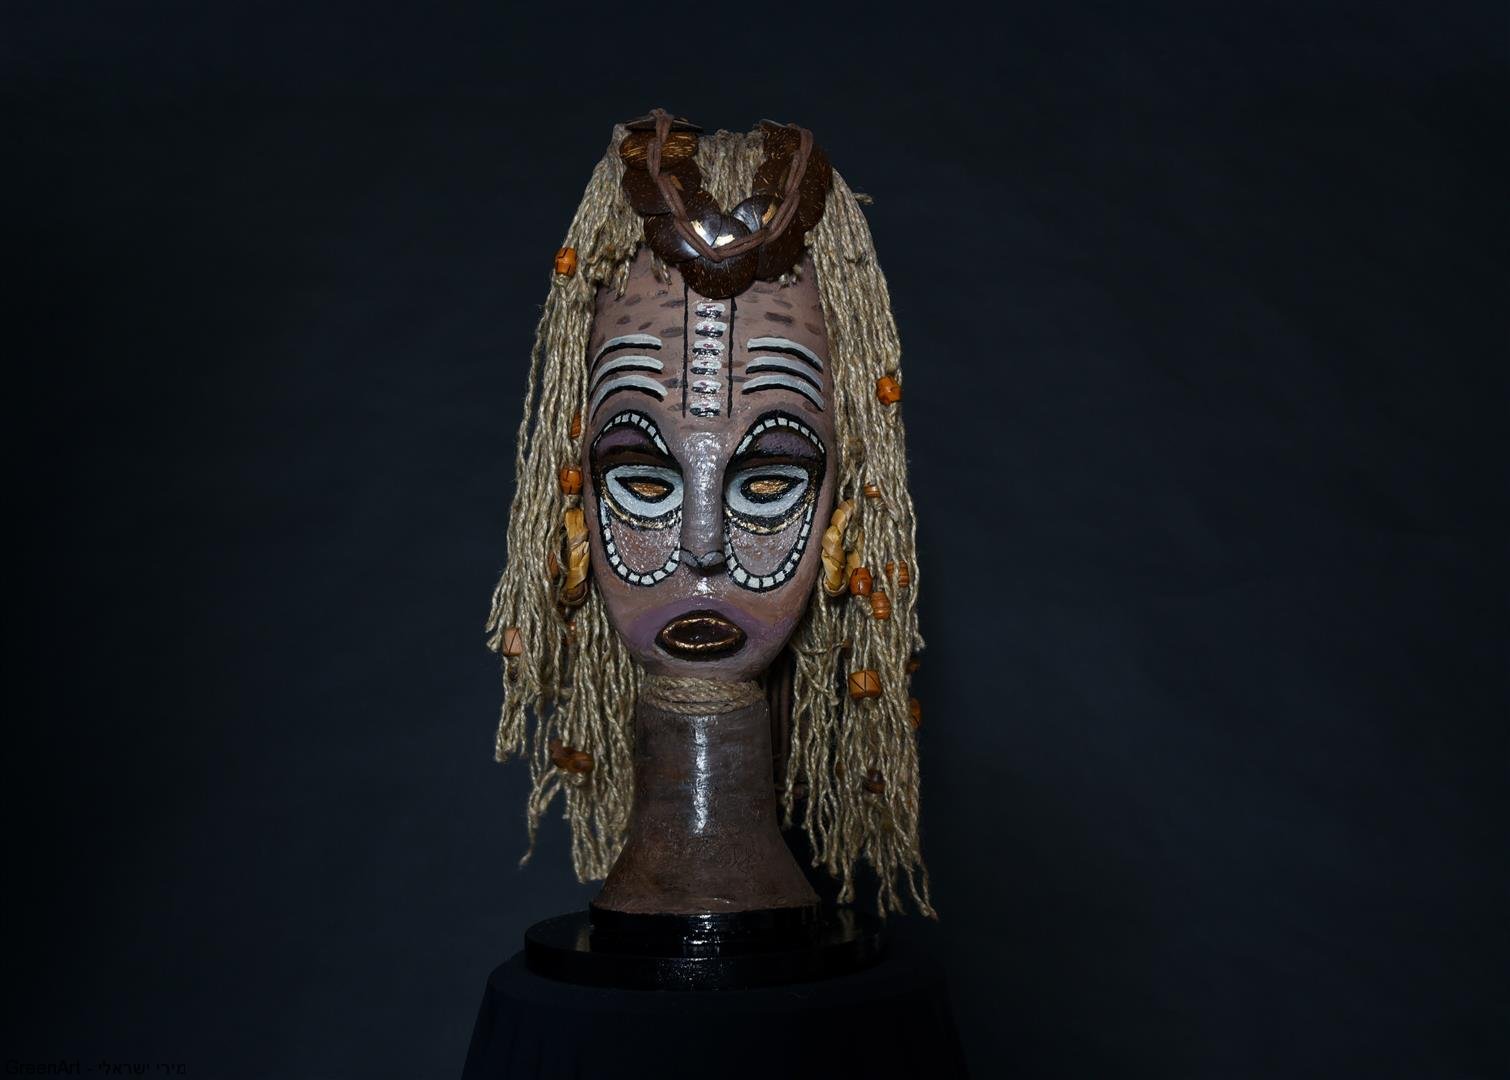 המסכה האפריקאית על רקע שחור דרמטי- צילום בסטודיו של ויקי מוצפי